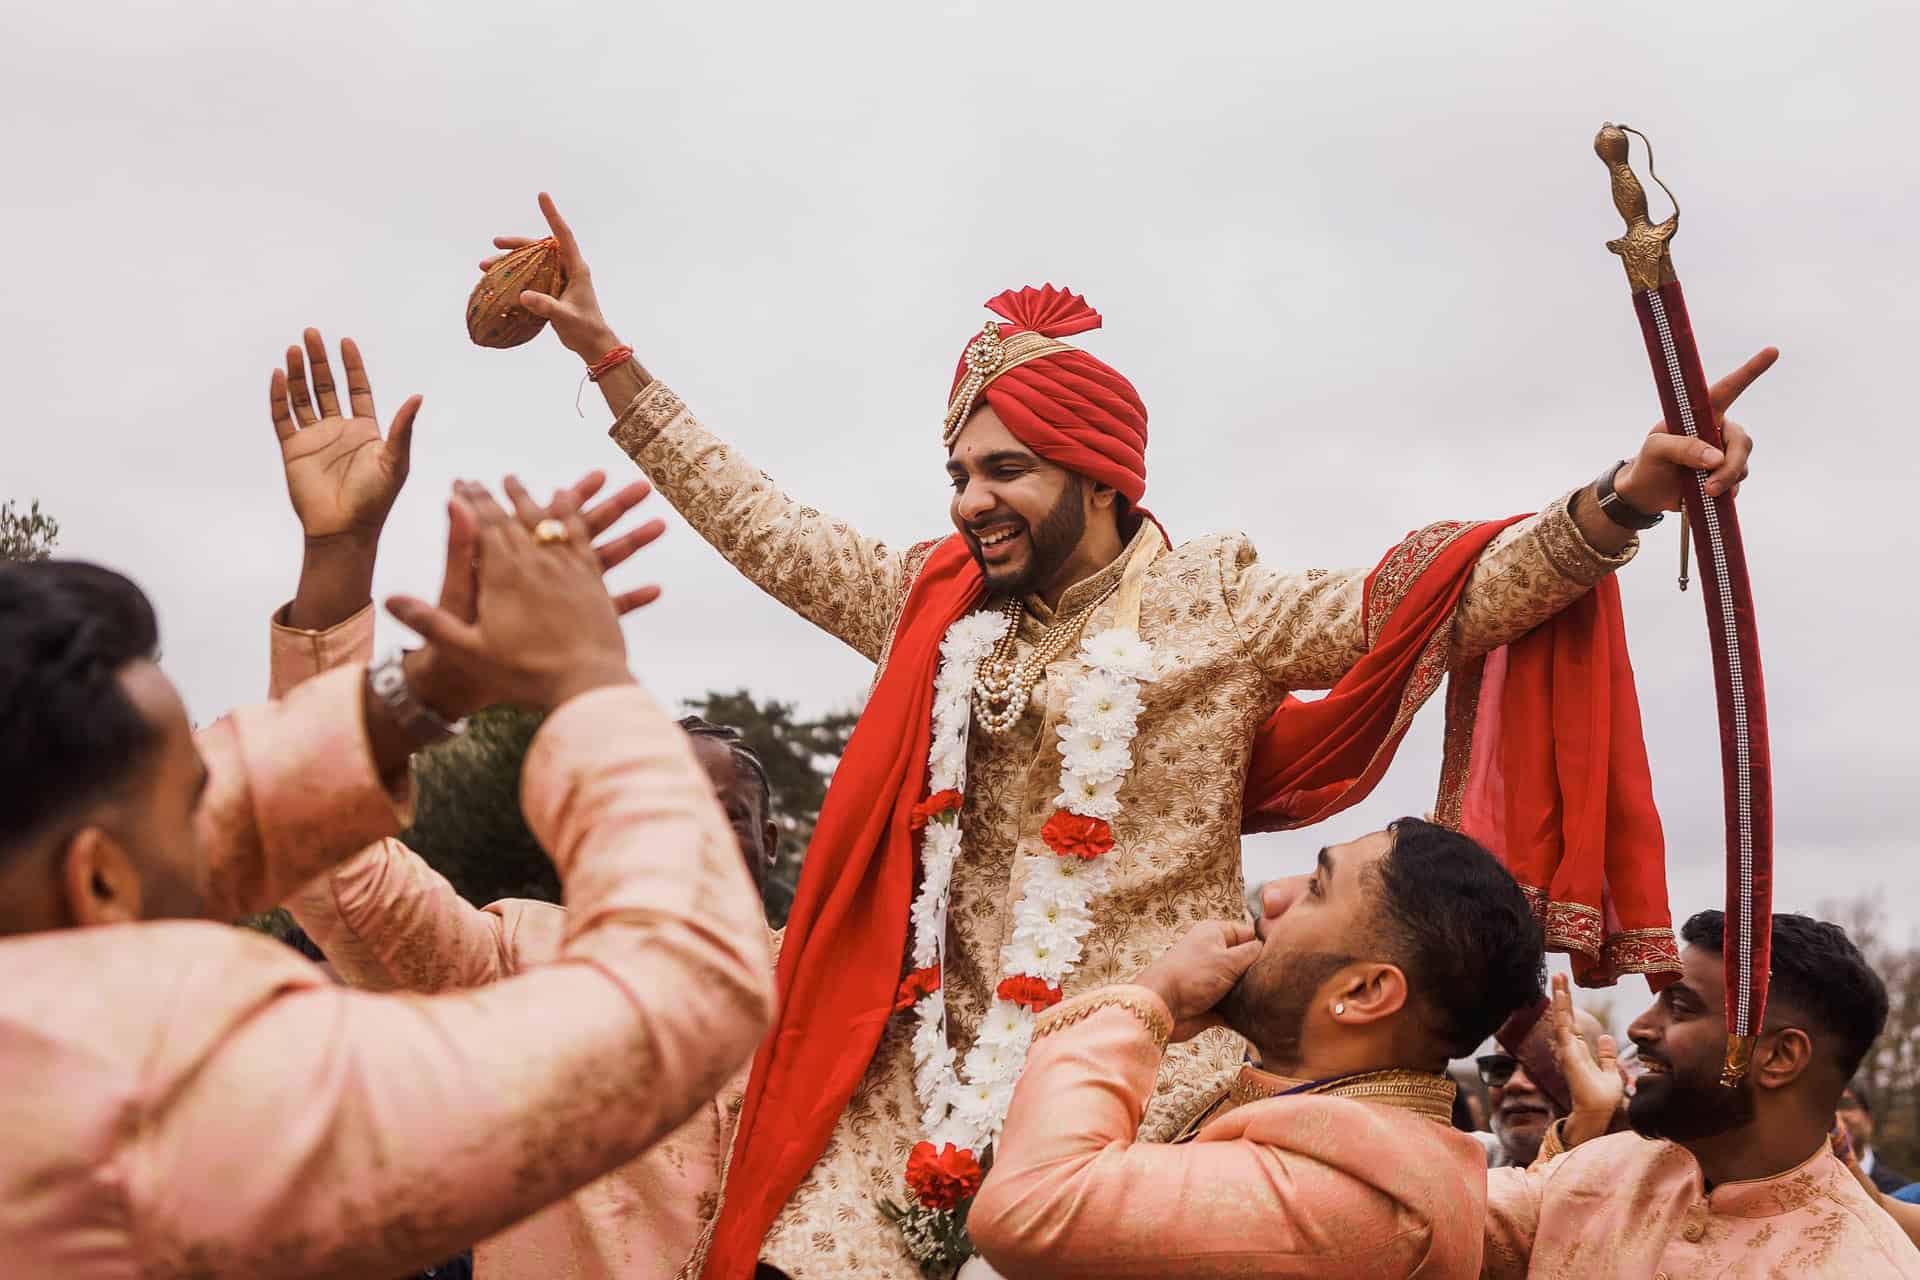 shendish manor hindu wedding photographer